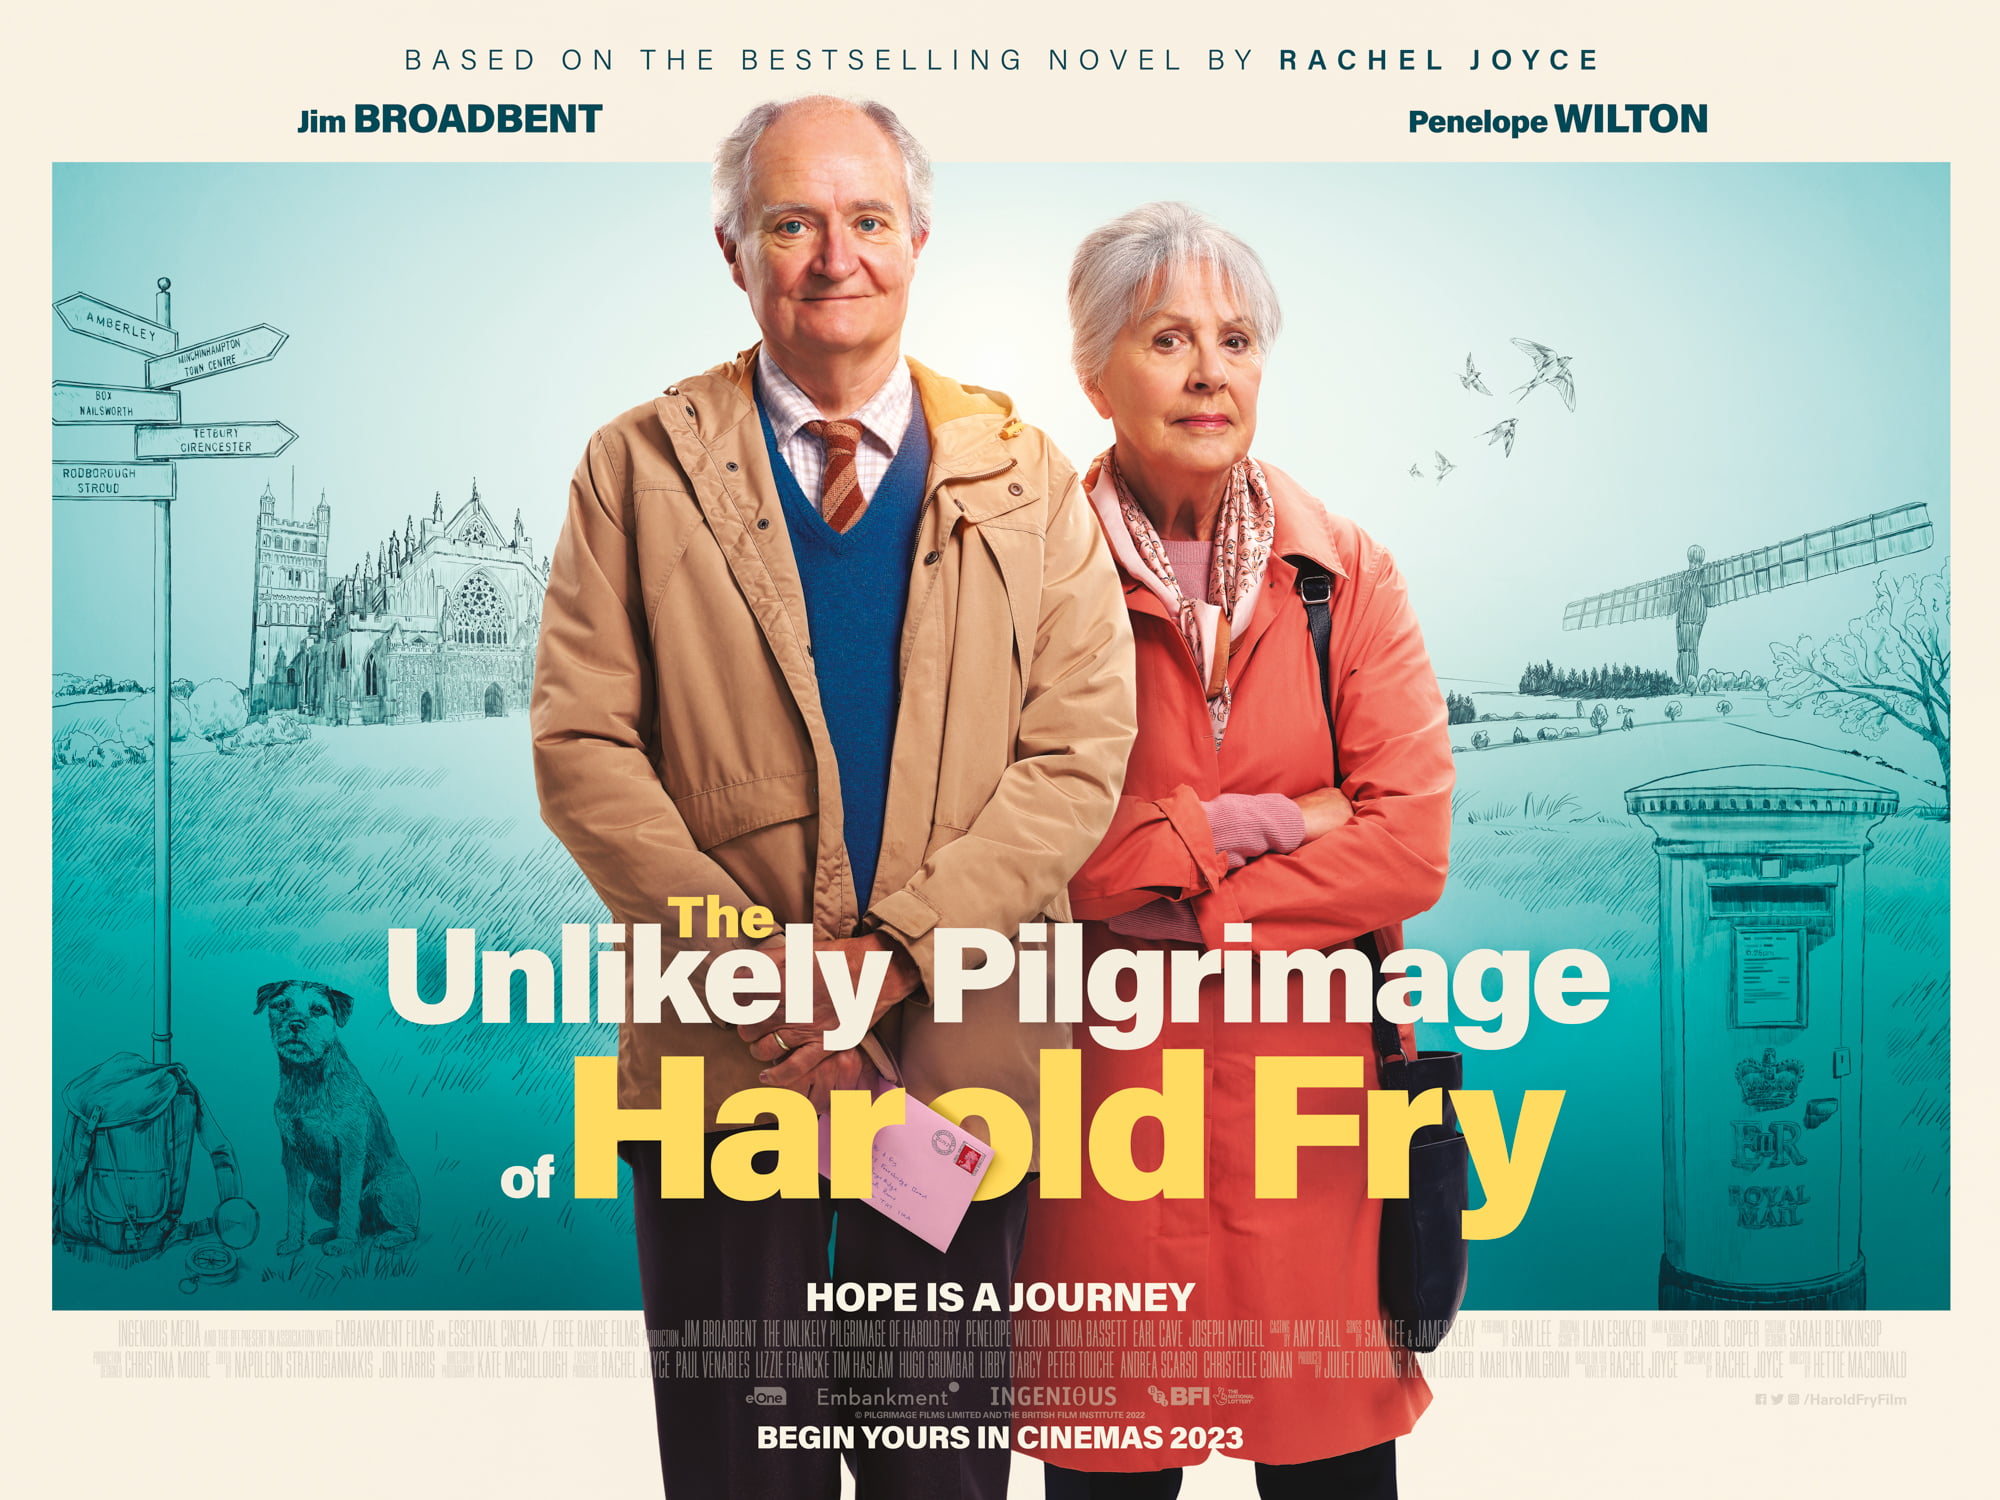 Harold Fry for eOne & Embankment, starrring Jim Broadbent and Penelope Wilton